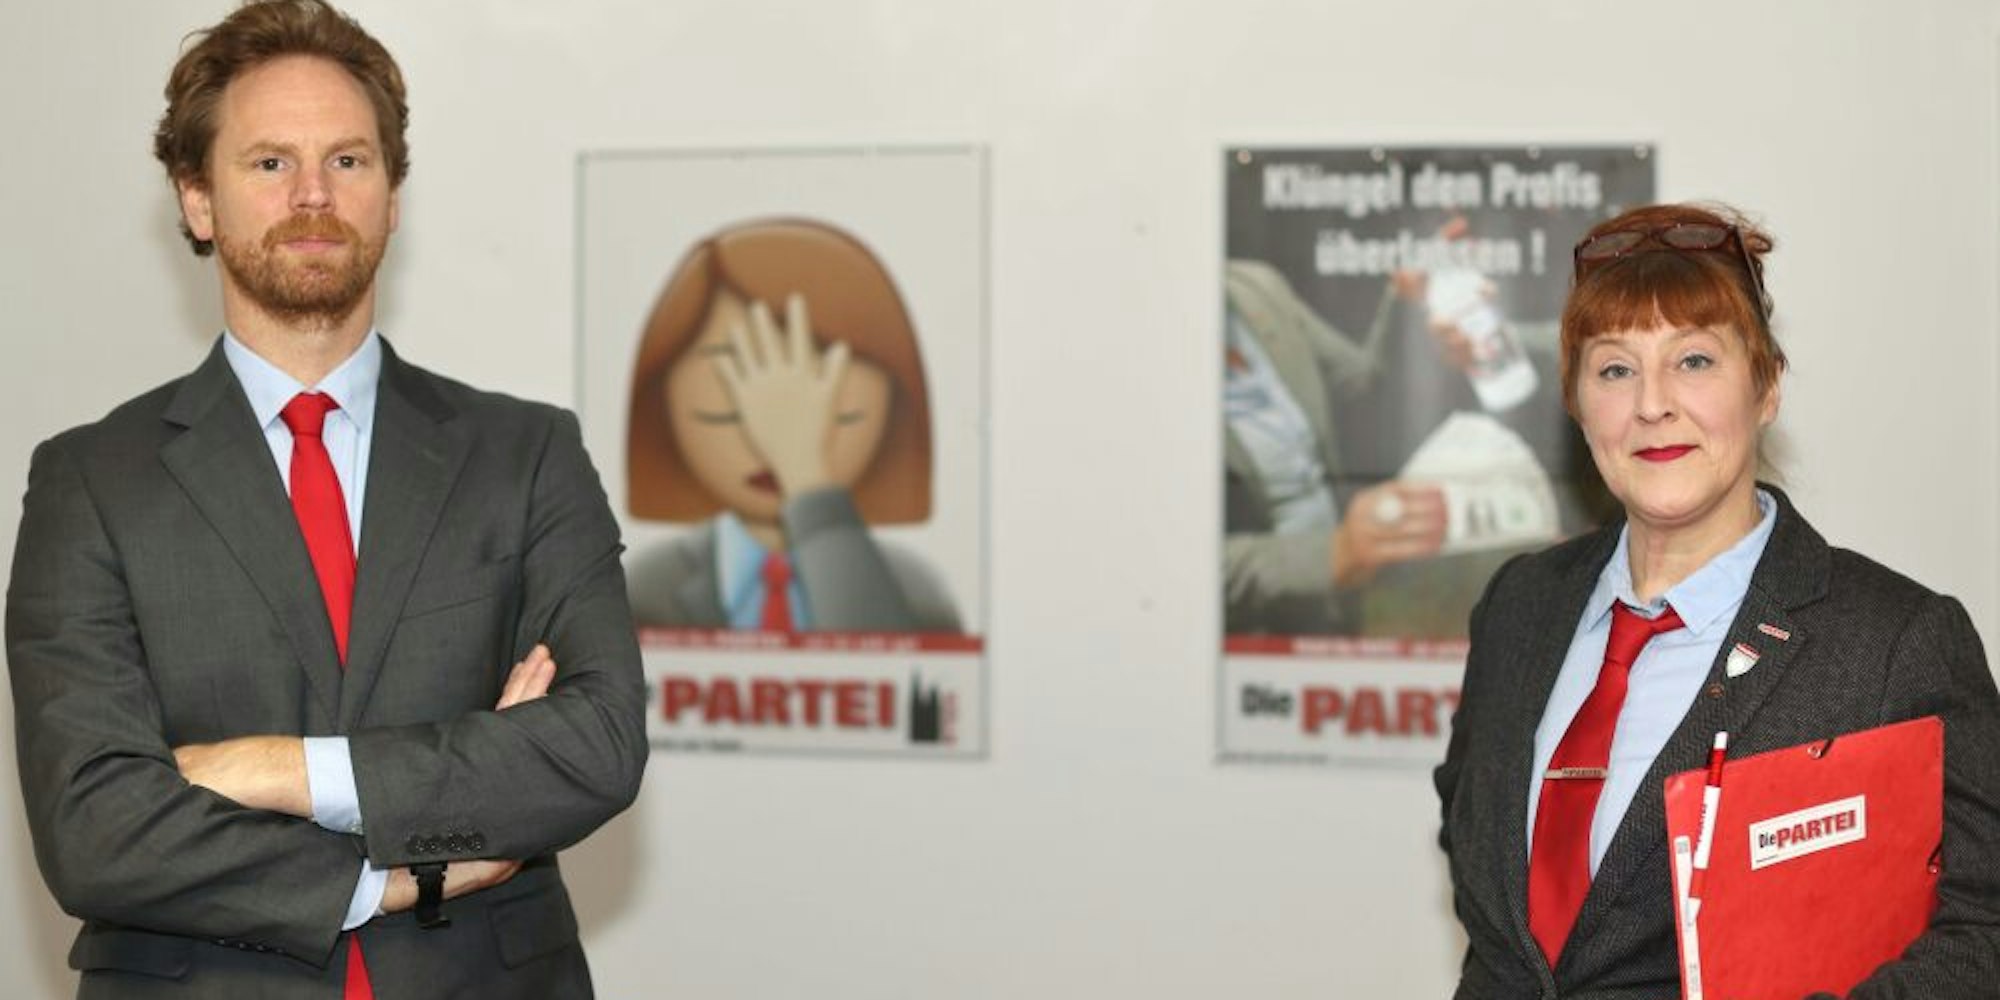 Neu im Stadtrat: Michael Hock und Birgit Dickas von der PARTEI wollen Satire und Klamauk mit Realpolitik verbinden .